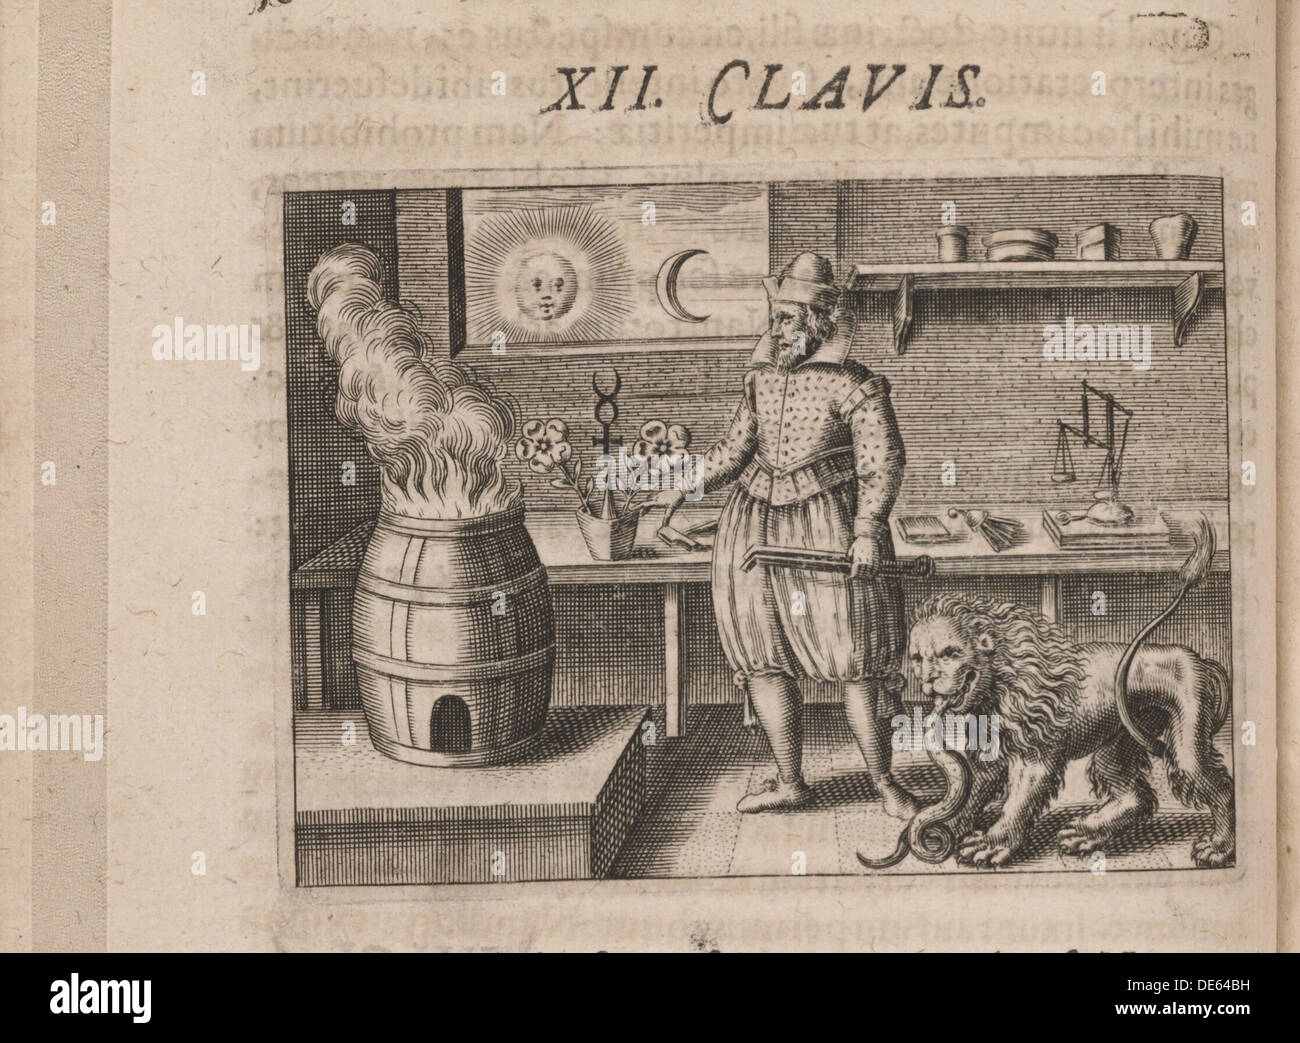 Pour Tripvs avrevs Illustration, hoc est, Tres tractatvs chymici selectissimi.., 1618. Artiste : Theodor de Bry, (1528-1598) Banque D'Images